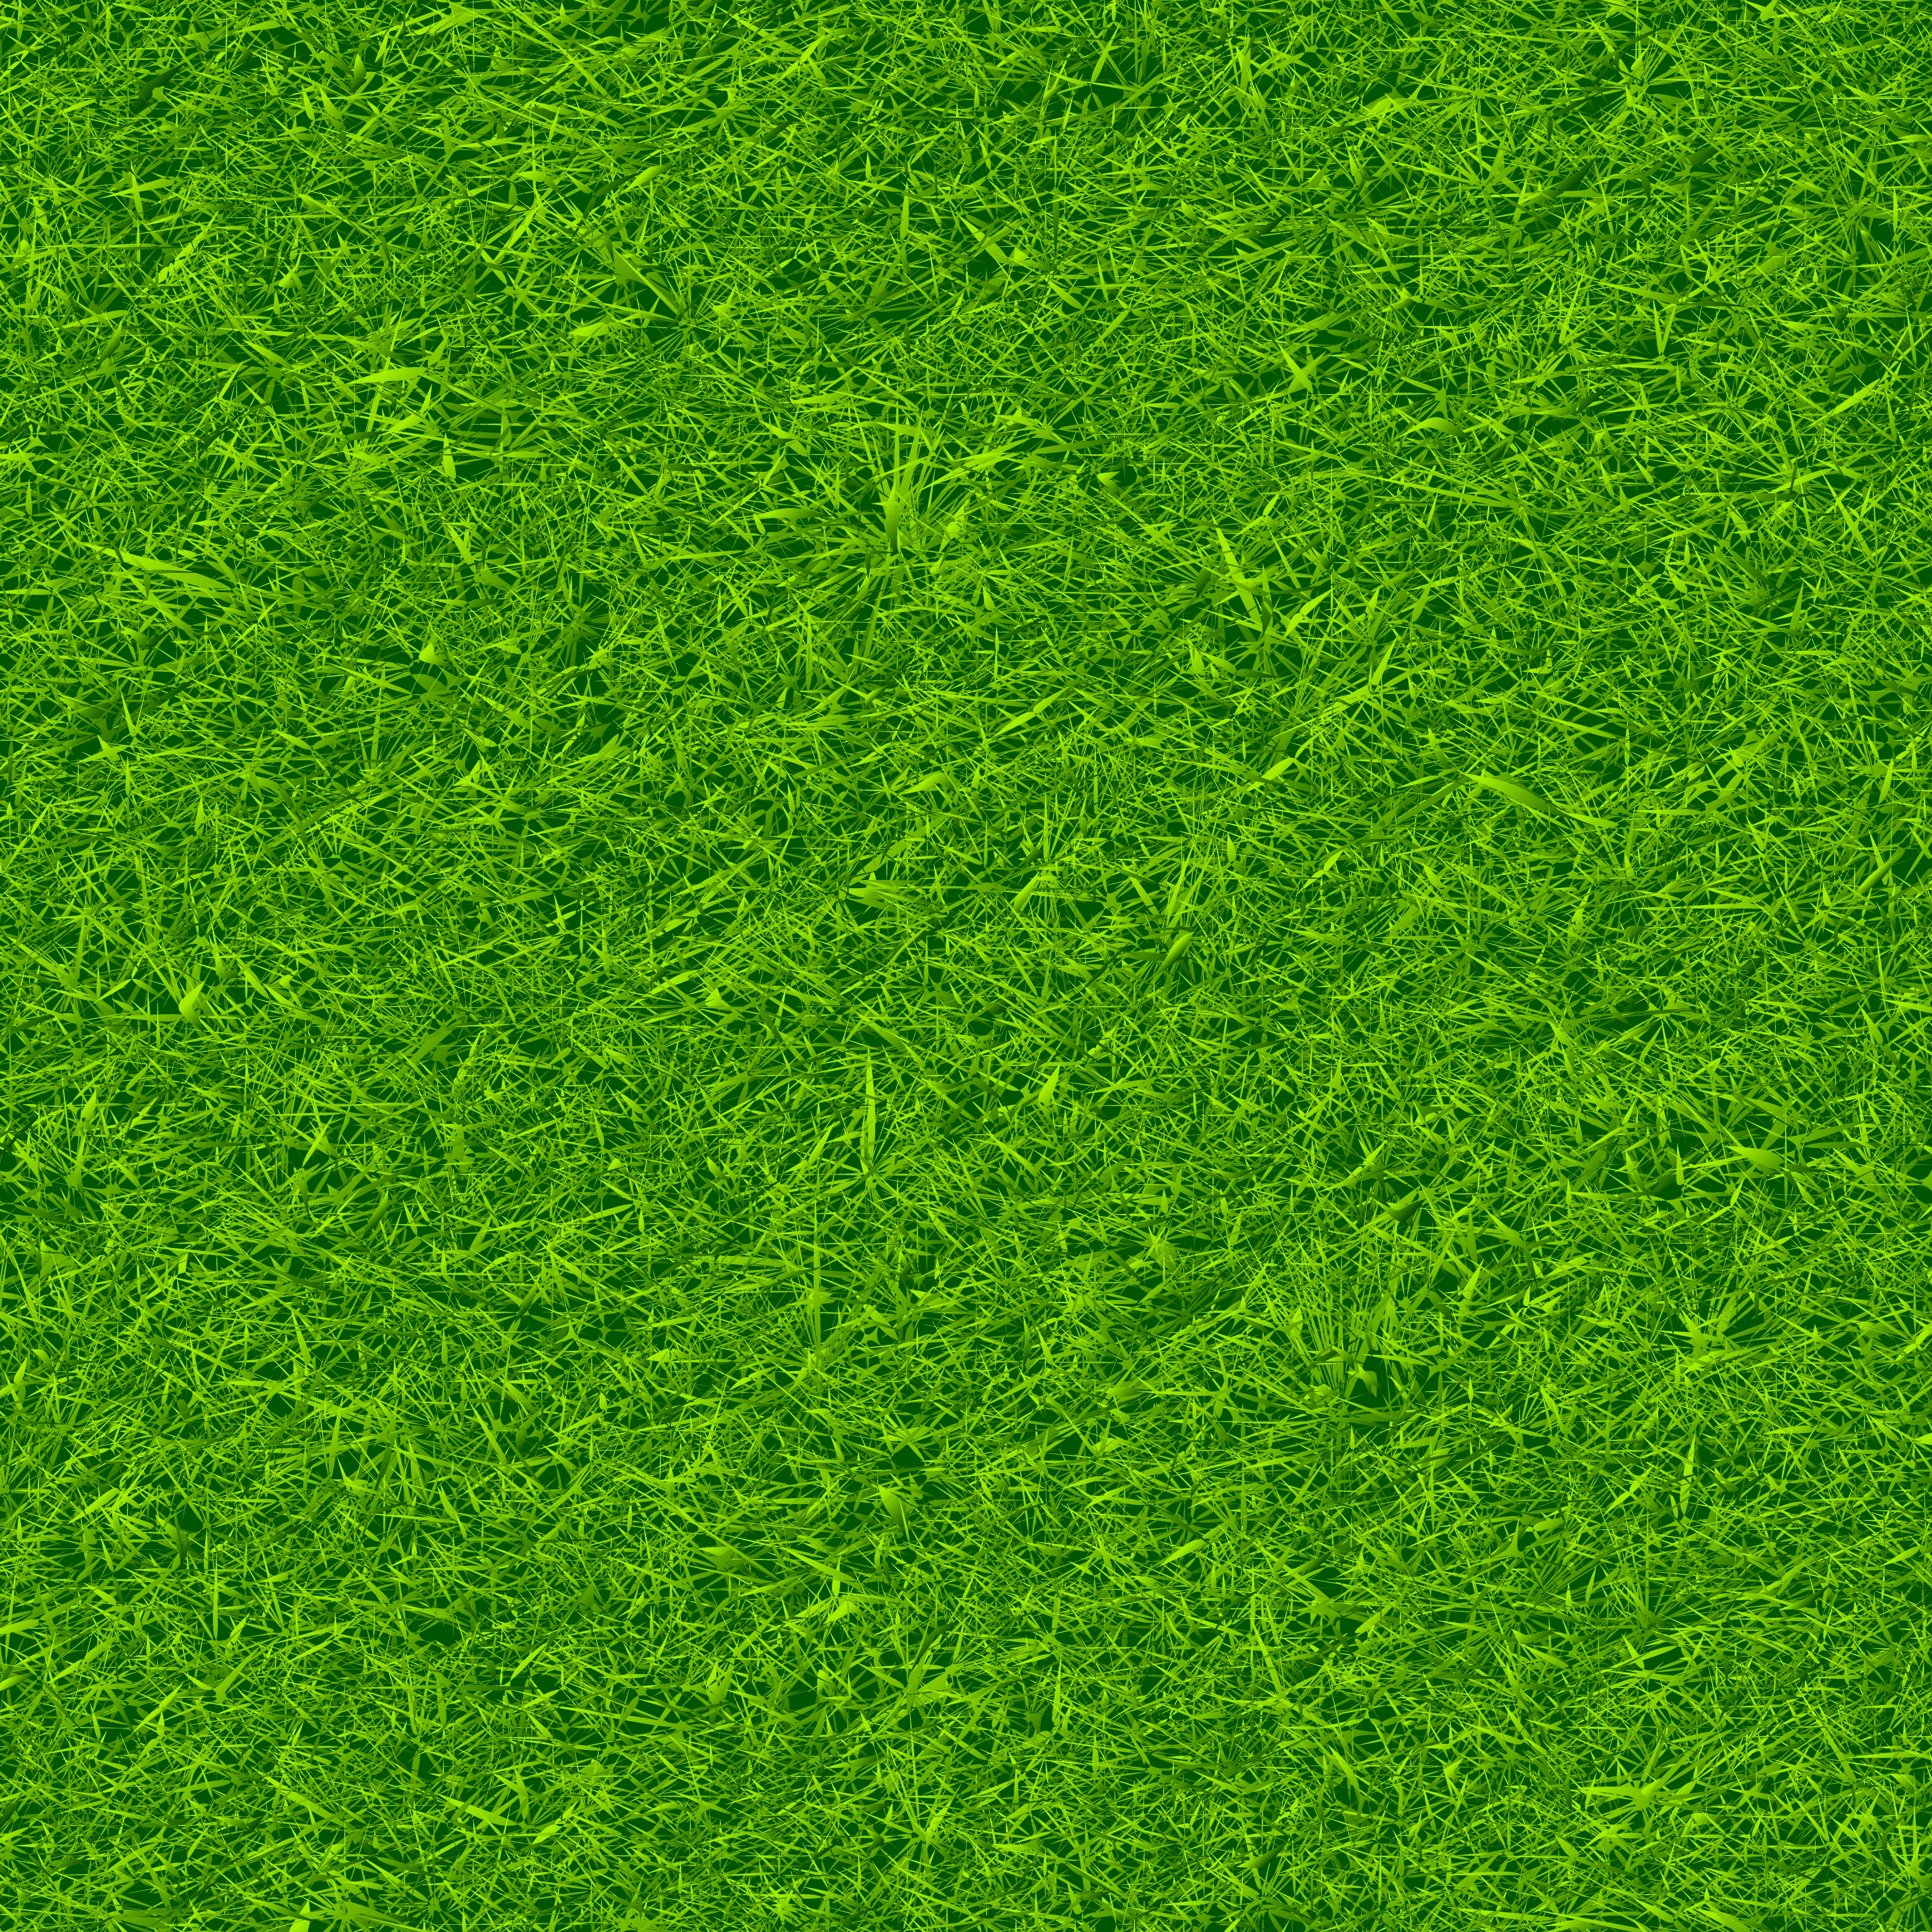 Green Grass Background Vector